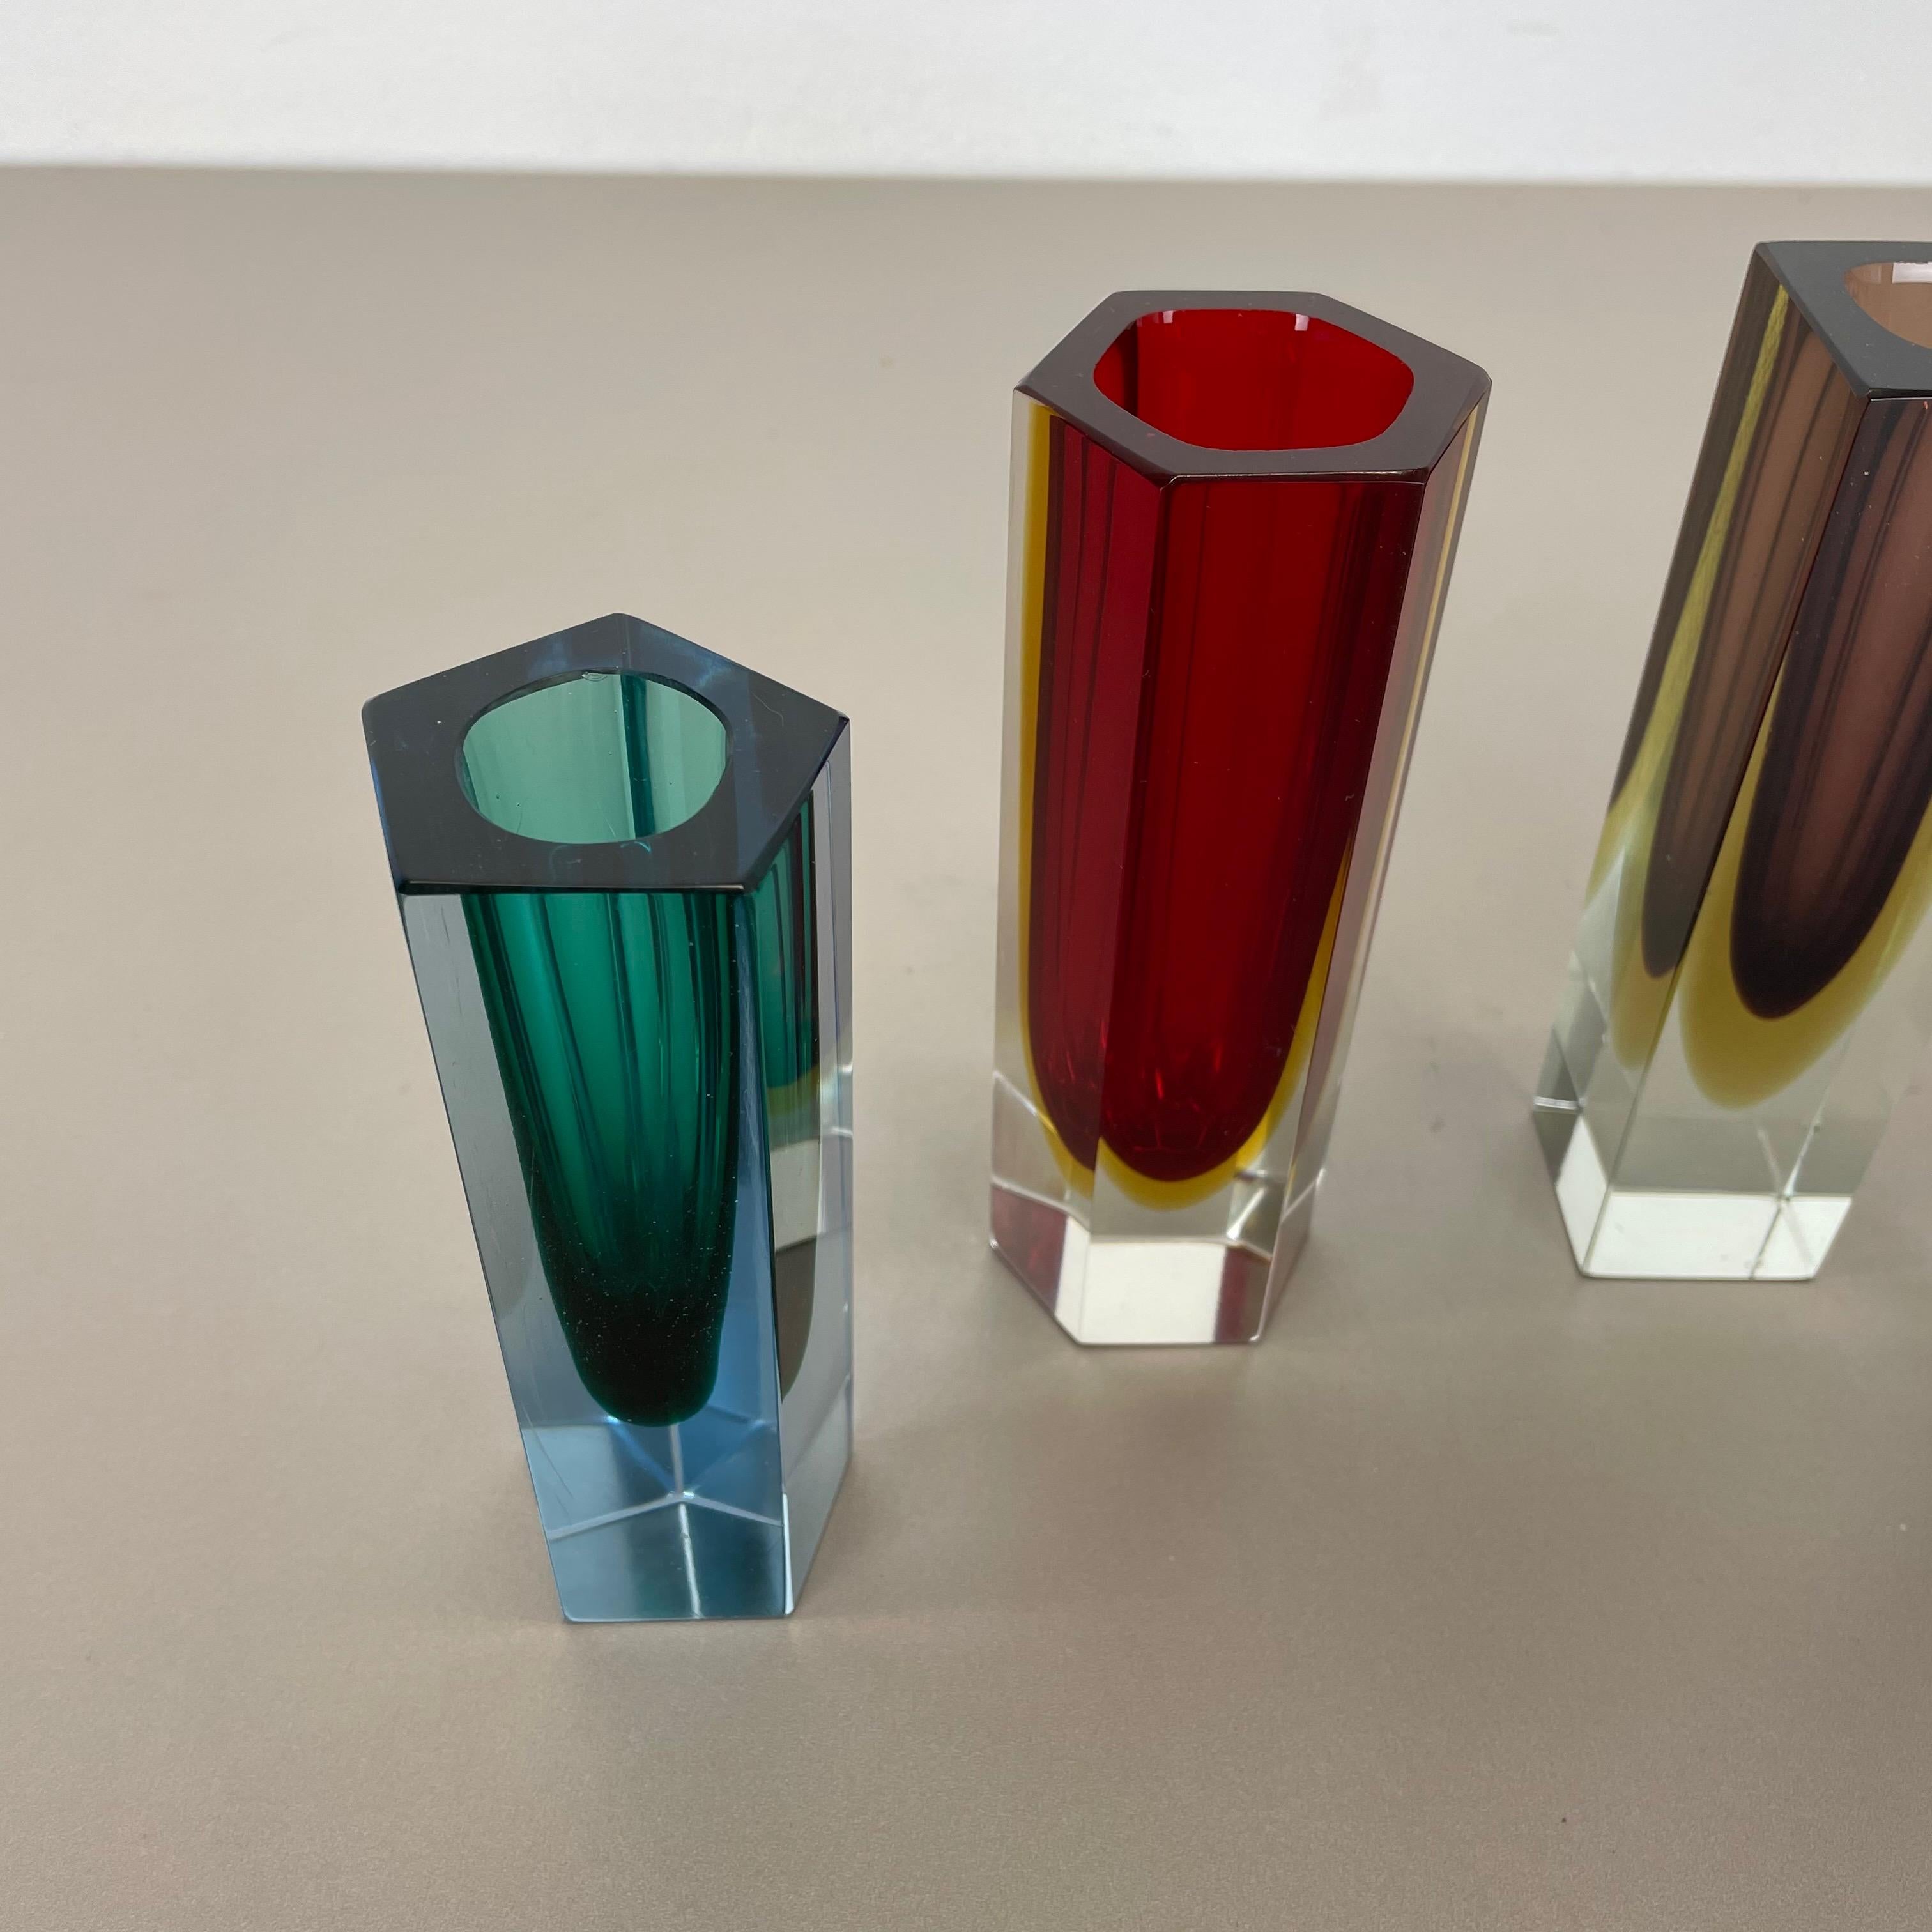 Satz von 4 facettierten Murano Glass Sommerso Vasen attri. Flavio Poli, Italien, 1970er-Jahre (Italienisch)